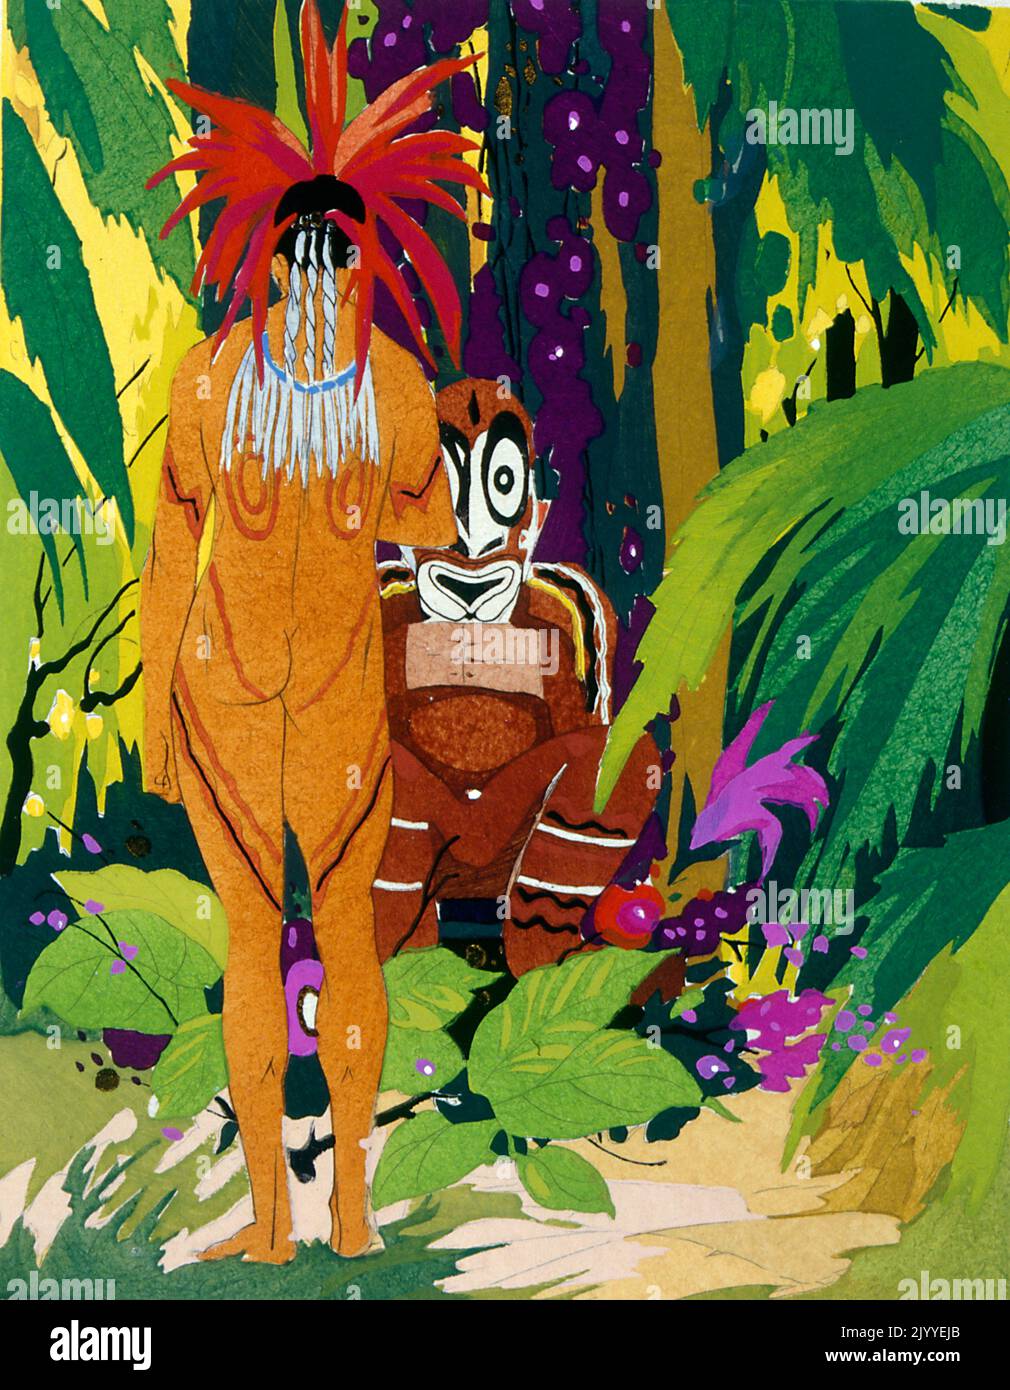 Illustrazione colorata raffigurante un uomo tribale tatuato che indossa uccelli del headdress della piuma del paradiso. Sembra provenire dalla regione del fiume Sepik in Papua Nuova Guinea. Foto Stock